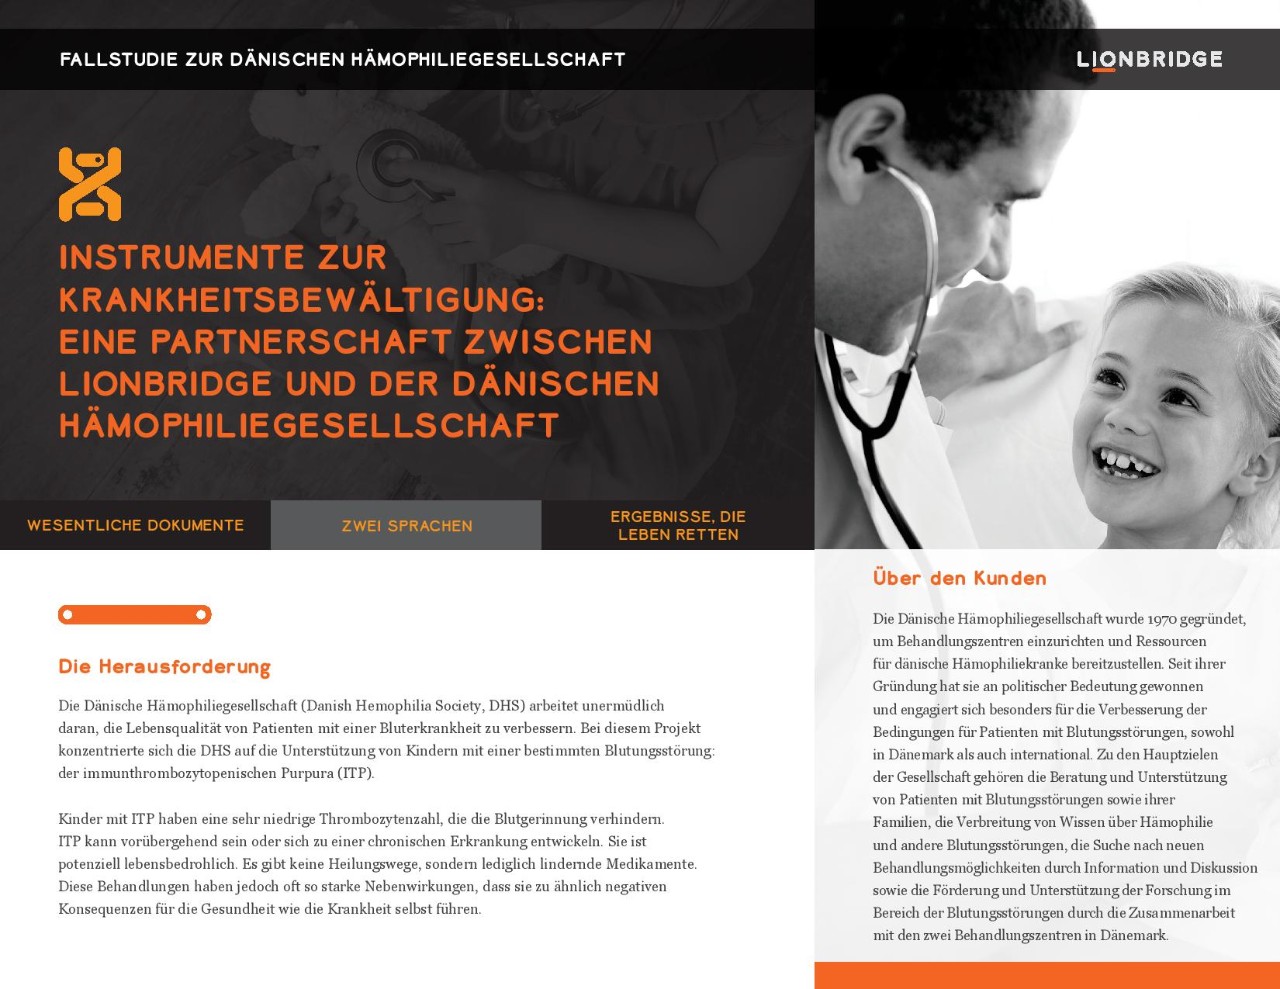 Titelseite der Fallstudie zur dänischen Hämophiliegesellschaft